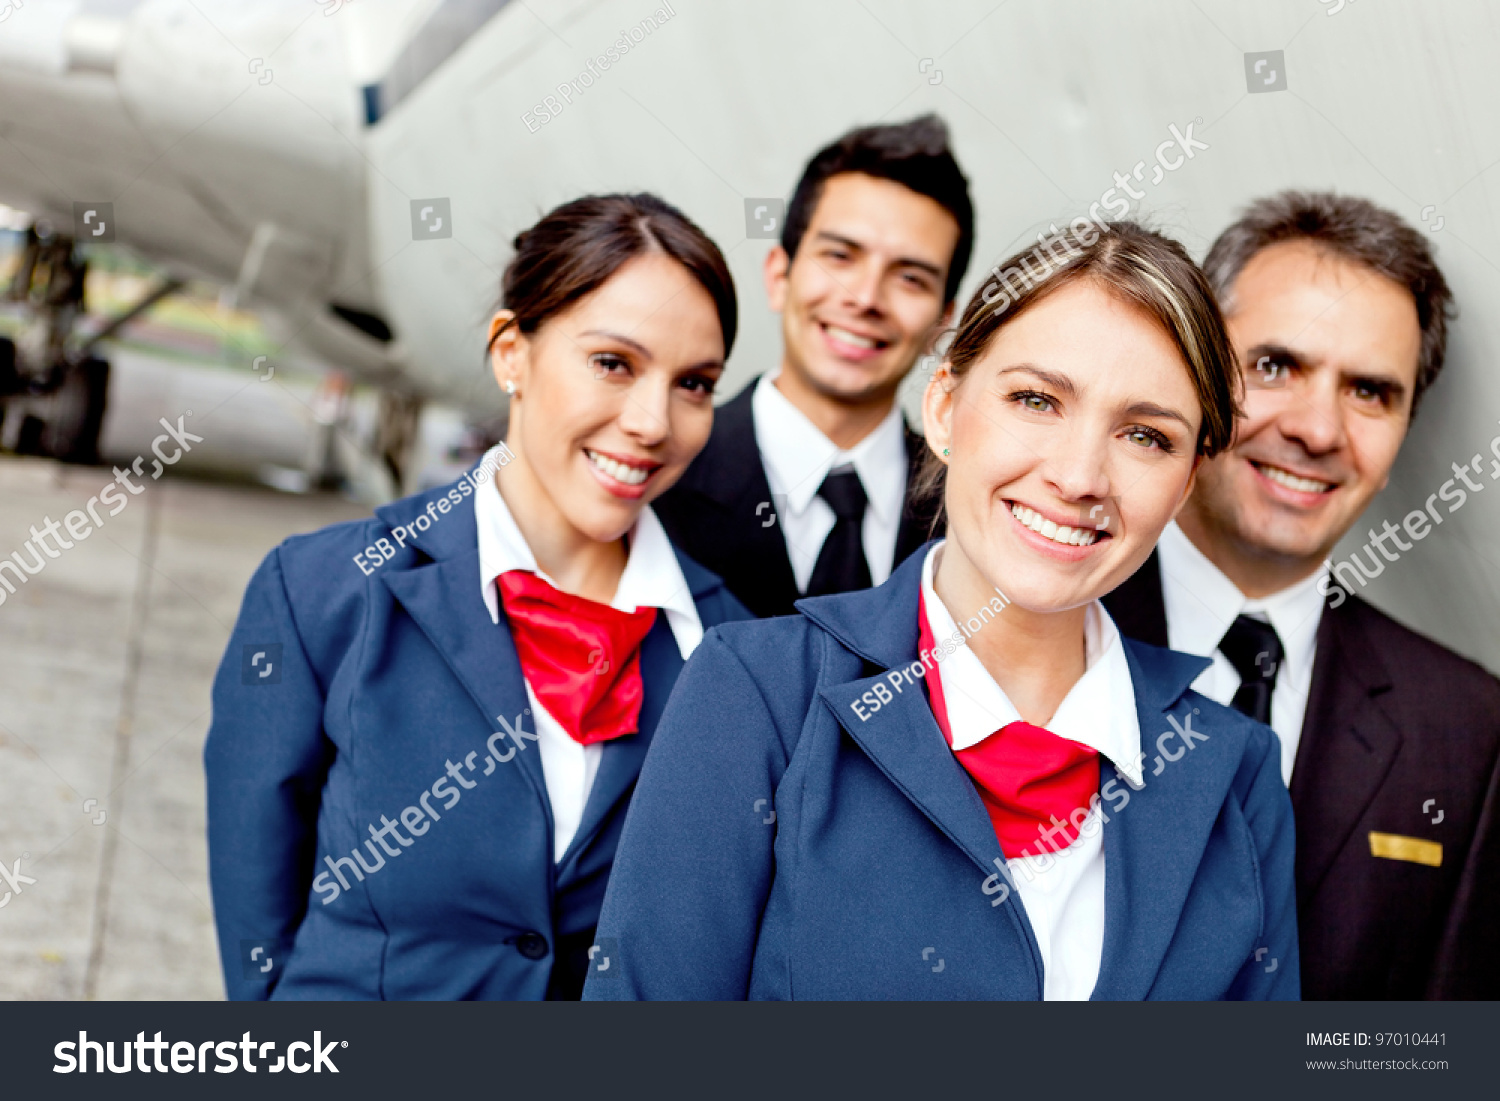 flight attendant online dating